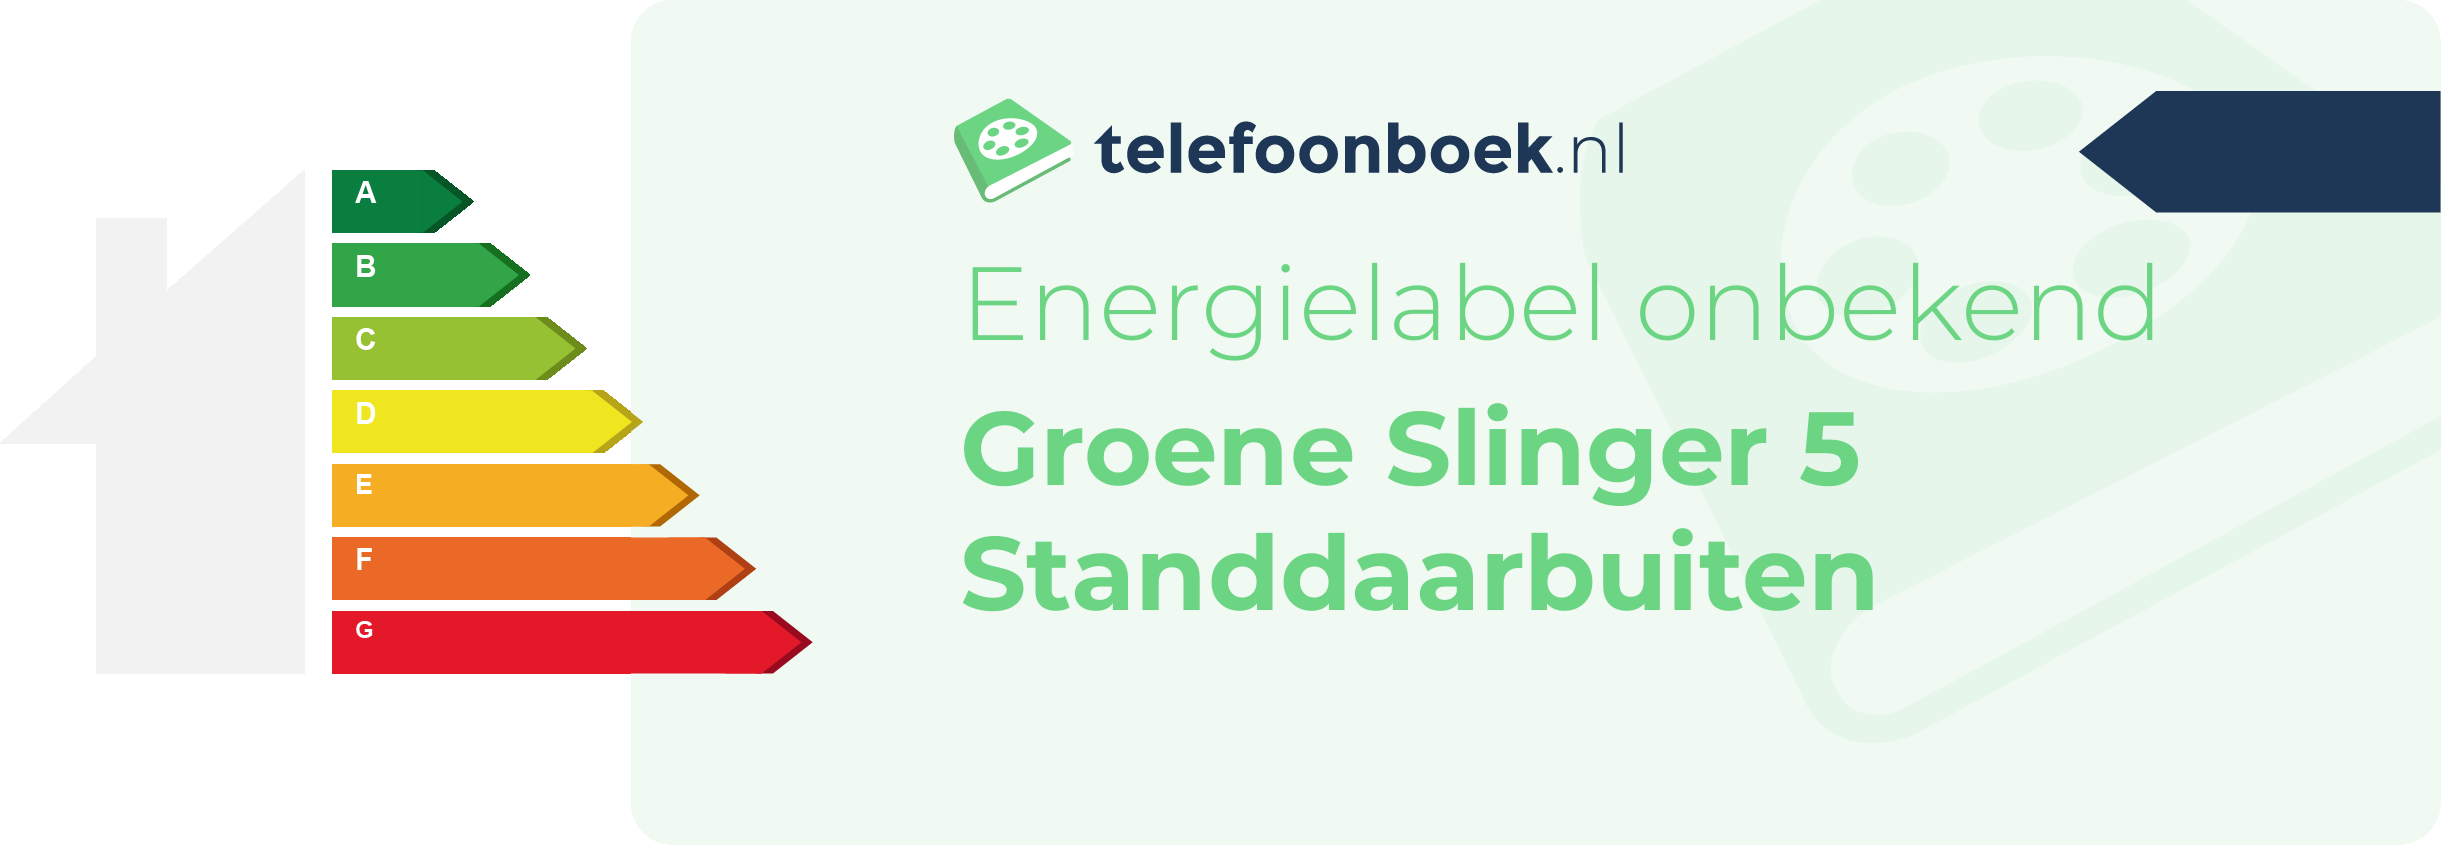 Energielabel Groene Slinger 5 Standdaarbuiten